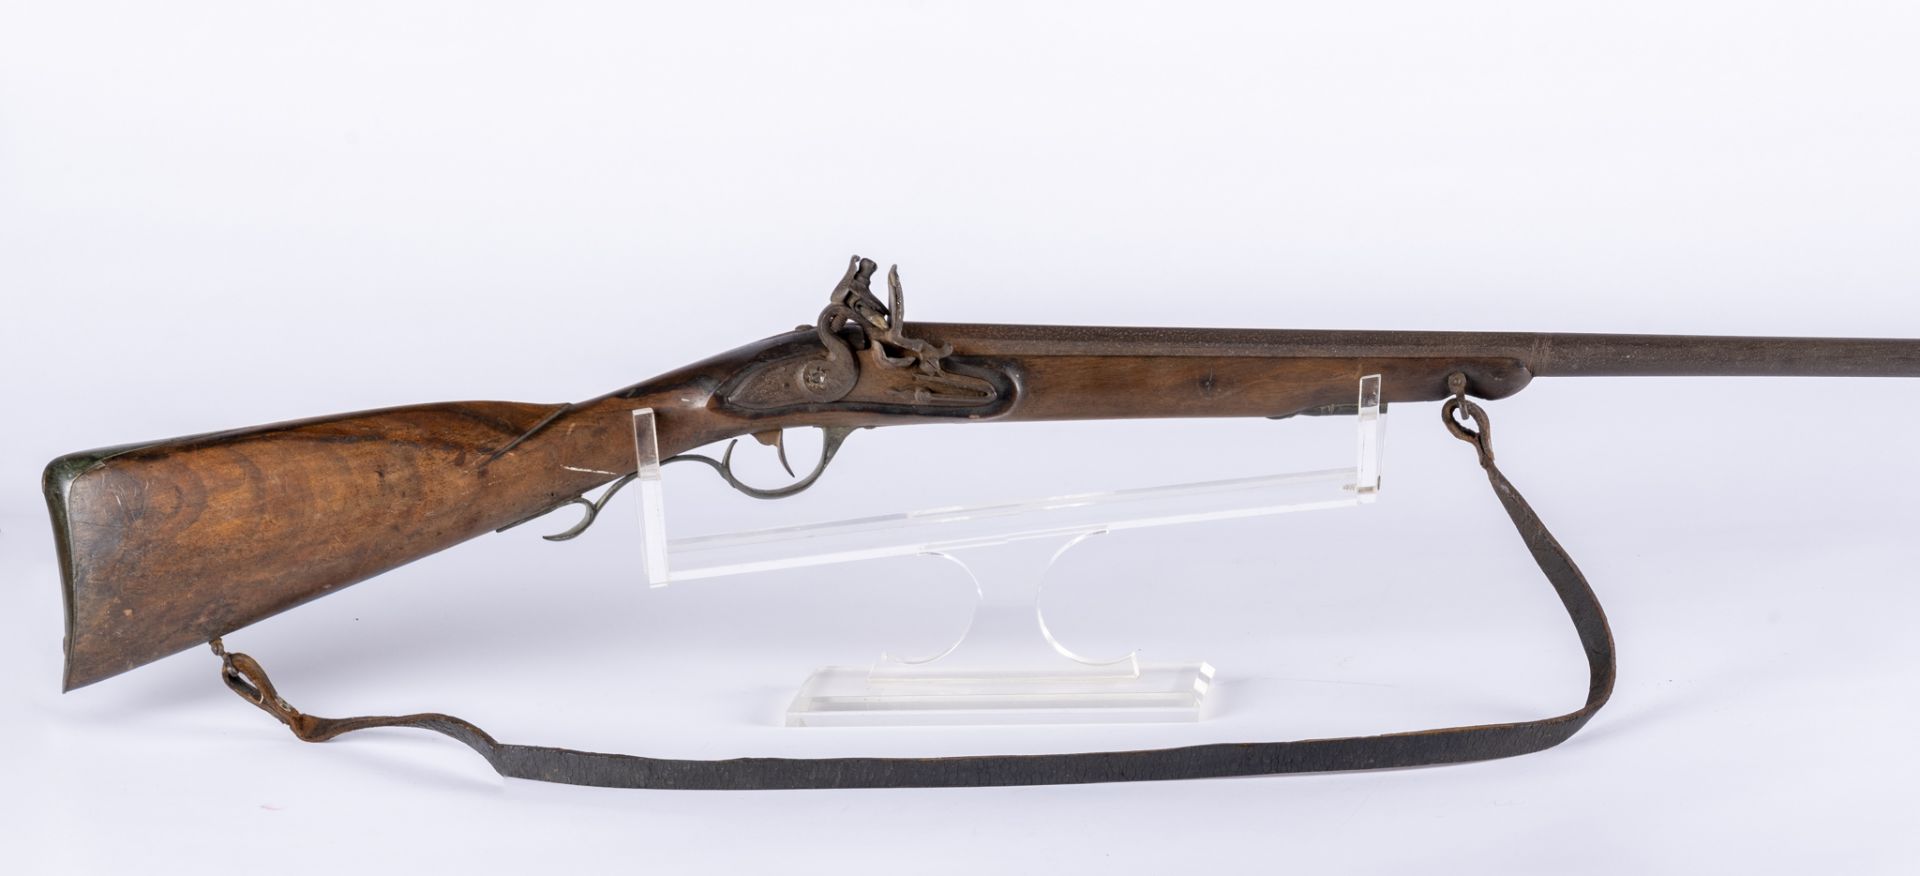 Belgique, XIXème siècle: Fusil à silex modifié pour la chasse. Fusil à silex de chasse issus du